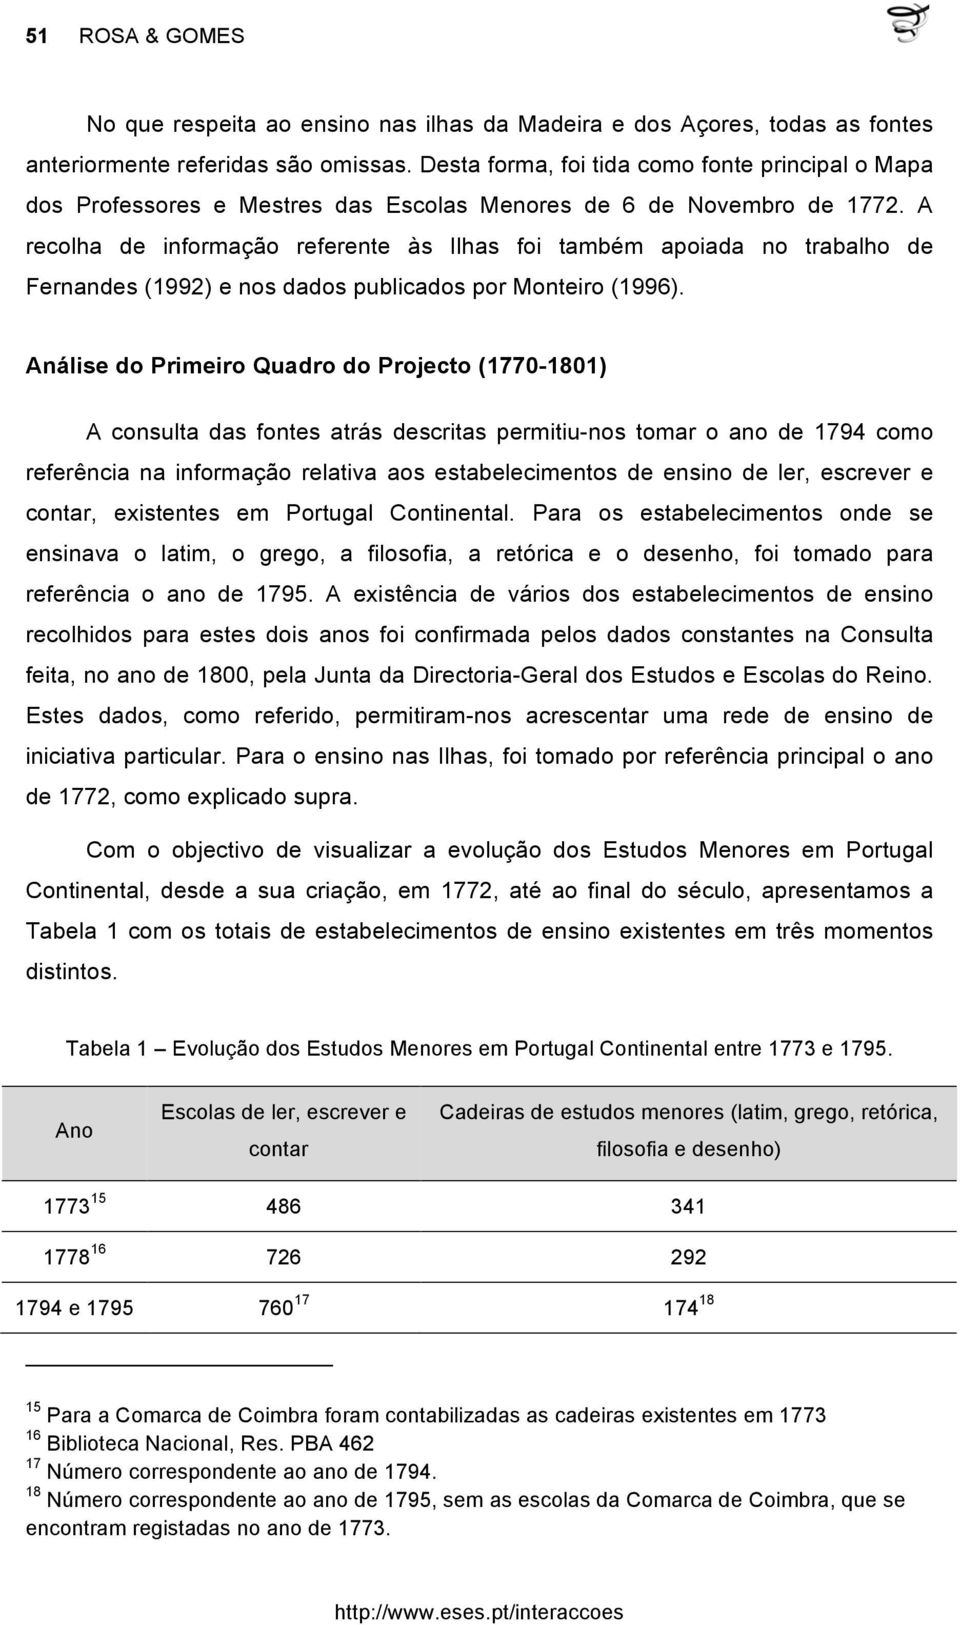 A recolha de informação referente às Ilhas foi também apoiada no trabalho de Fernandes (1992) e nos dados publicados por Monteiro (1996).